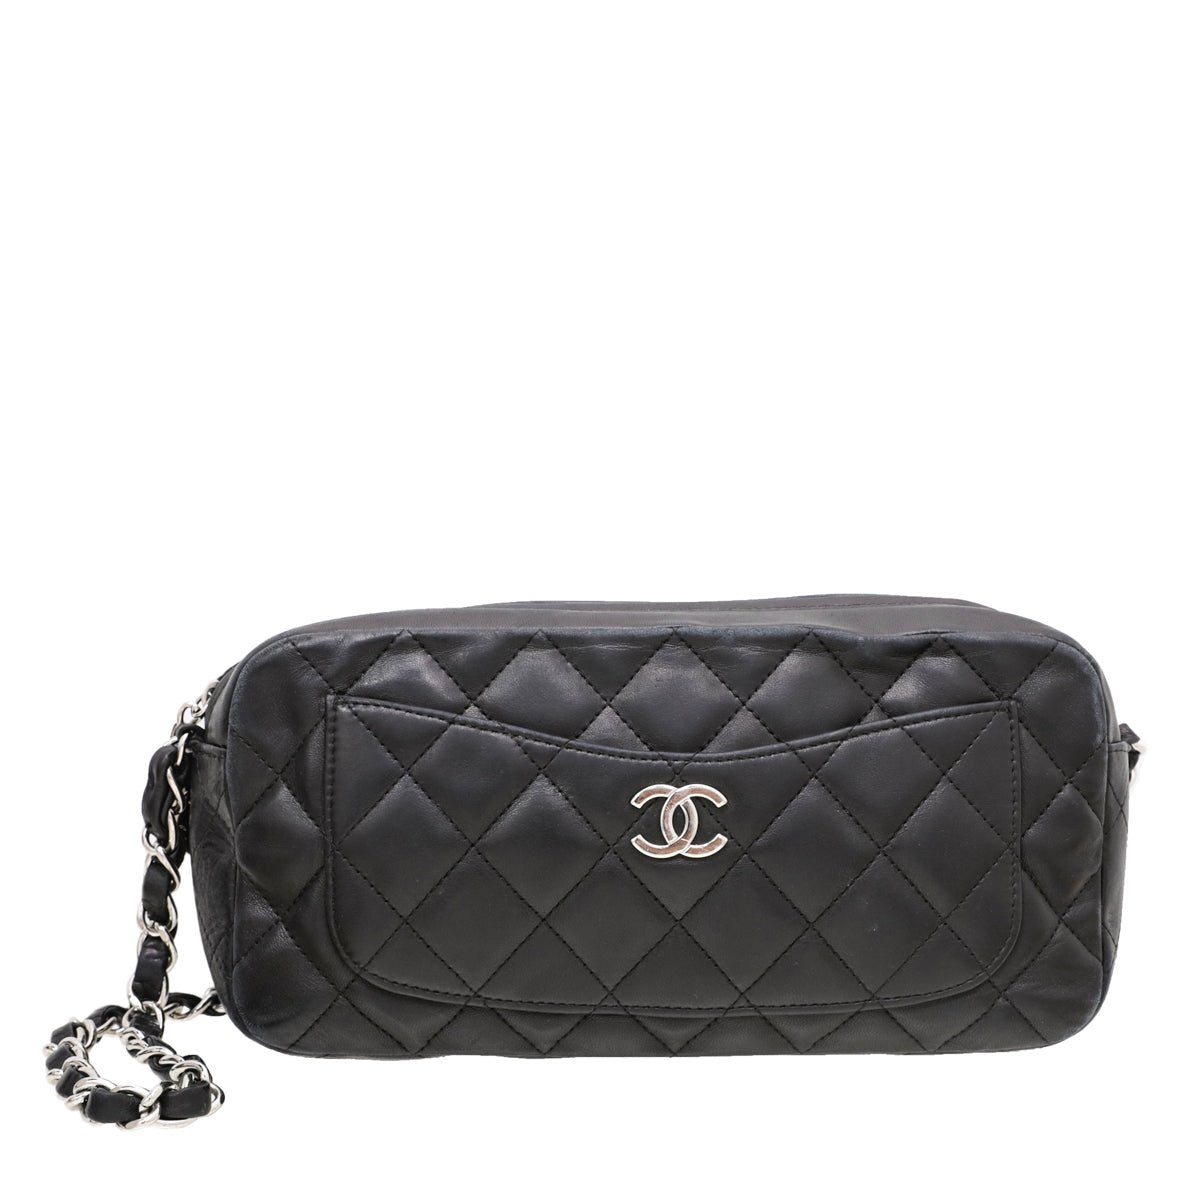 The Closet - Chanel Black CC Camera Bag | The Closet